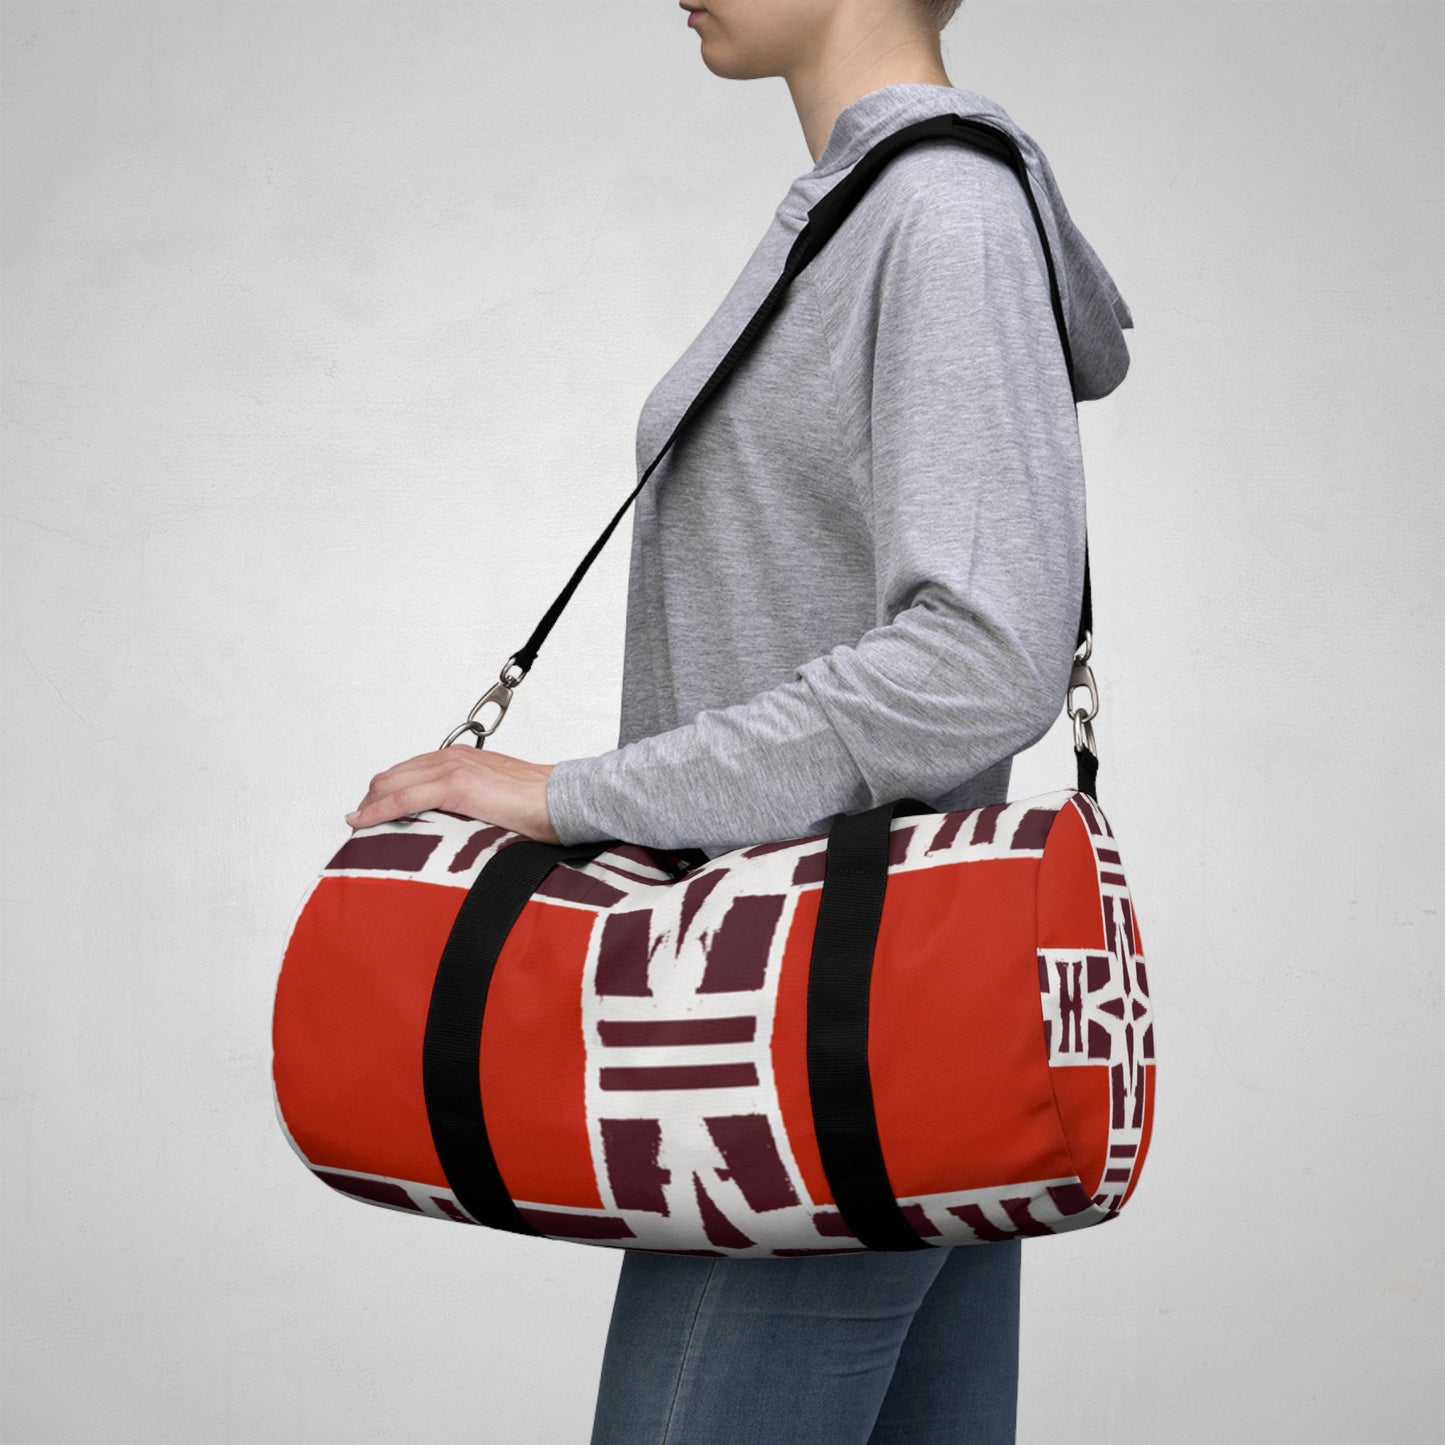 Emmett E. Edwards - Geometric Pattern Duffel Travel Gym Luggage Bag